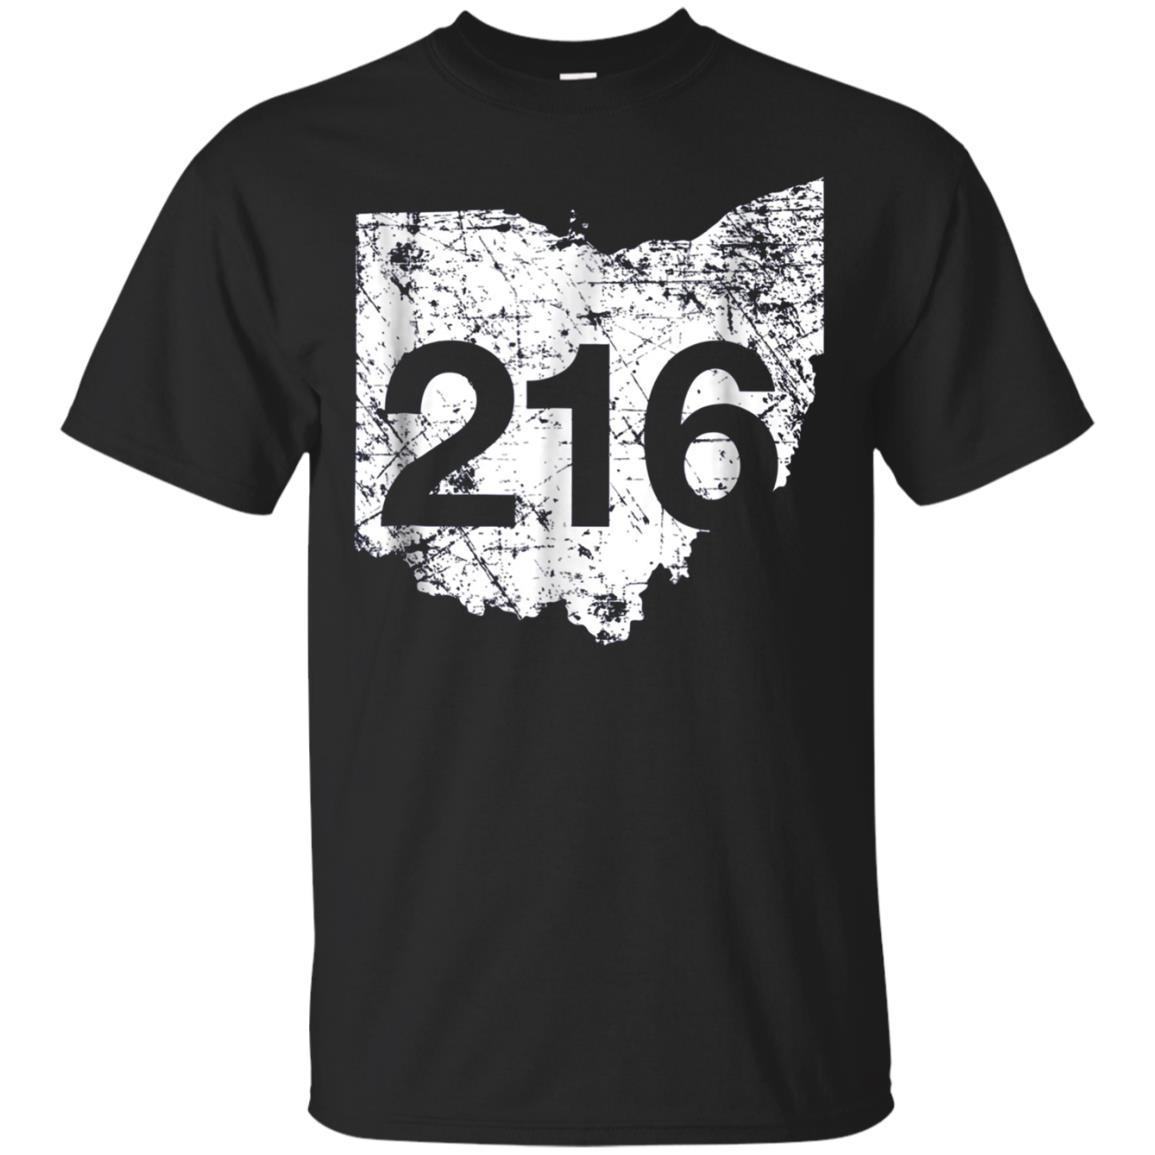 Cleveland Lakewood Brook Park Area Code 216, Ohio Gift T Shirt